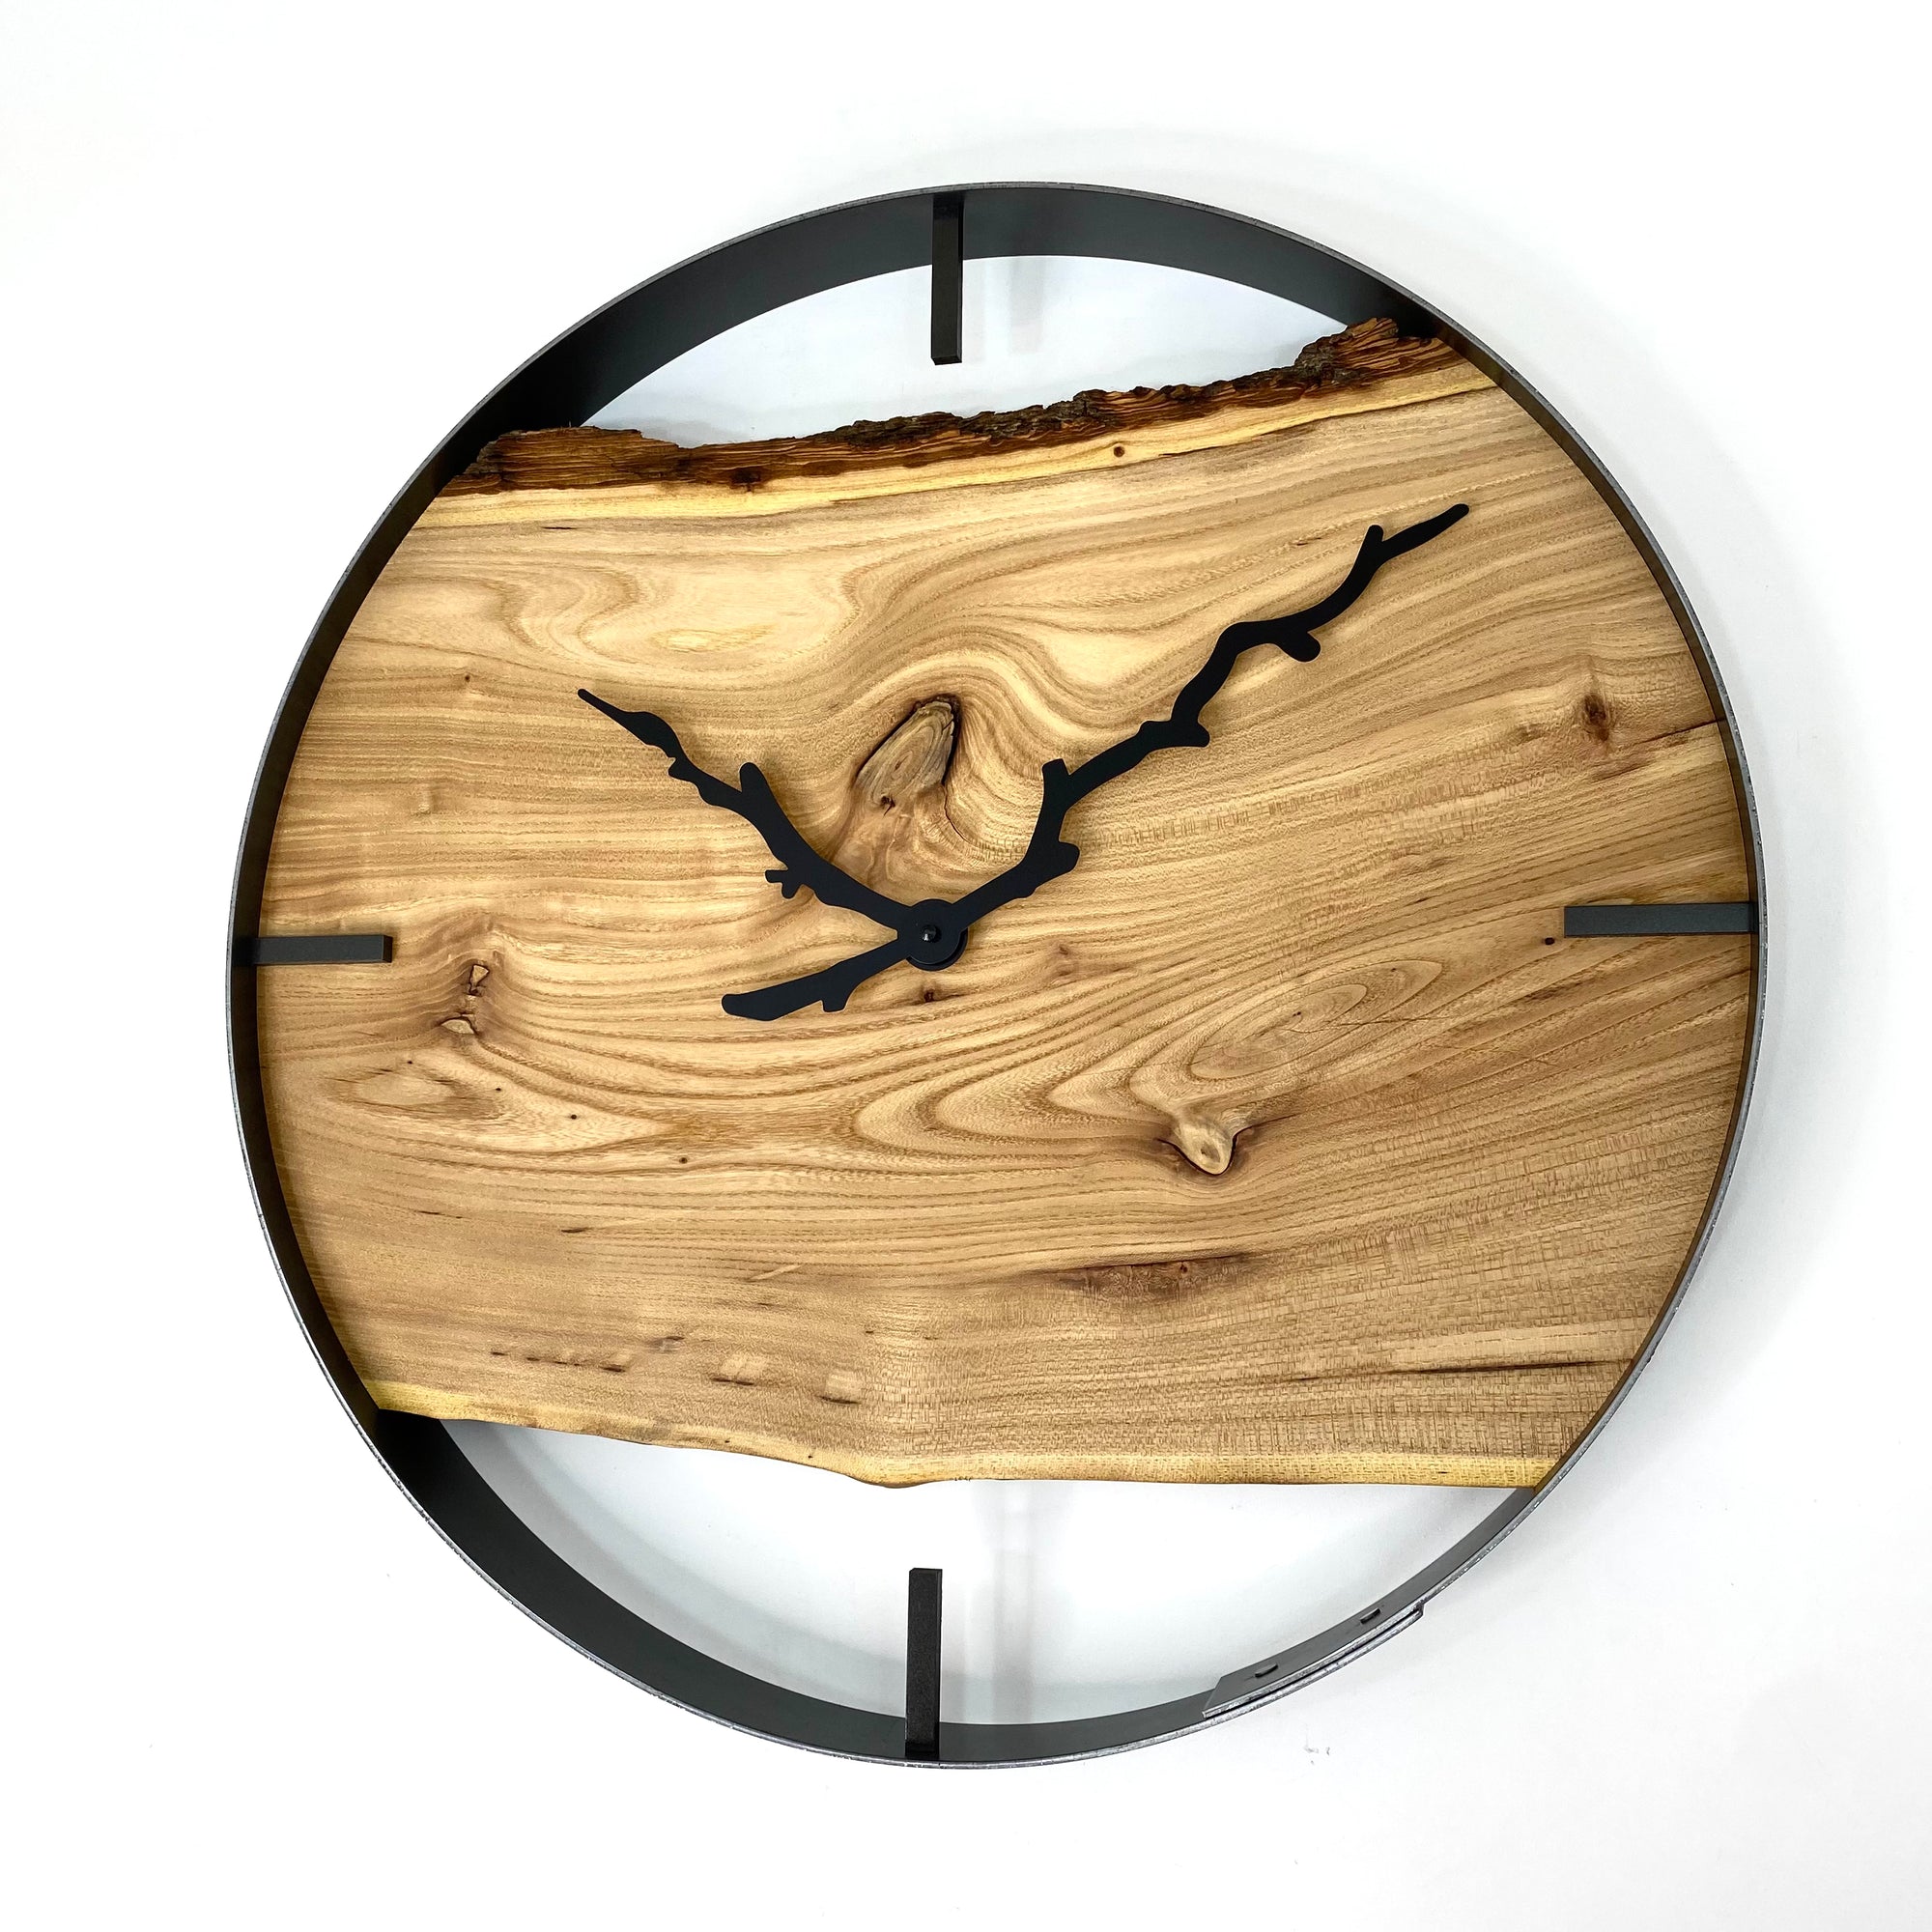 21” Elm Live Edge Wood Clock